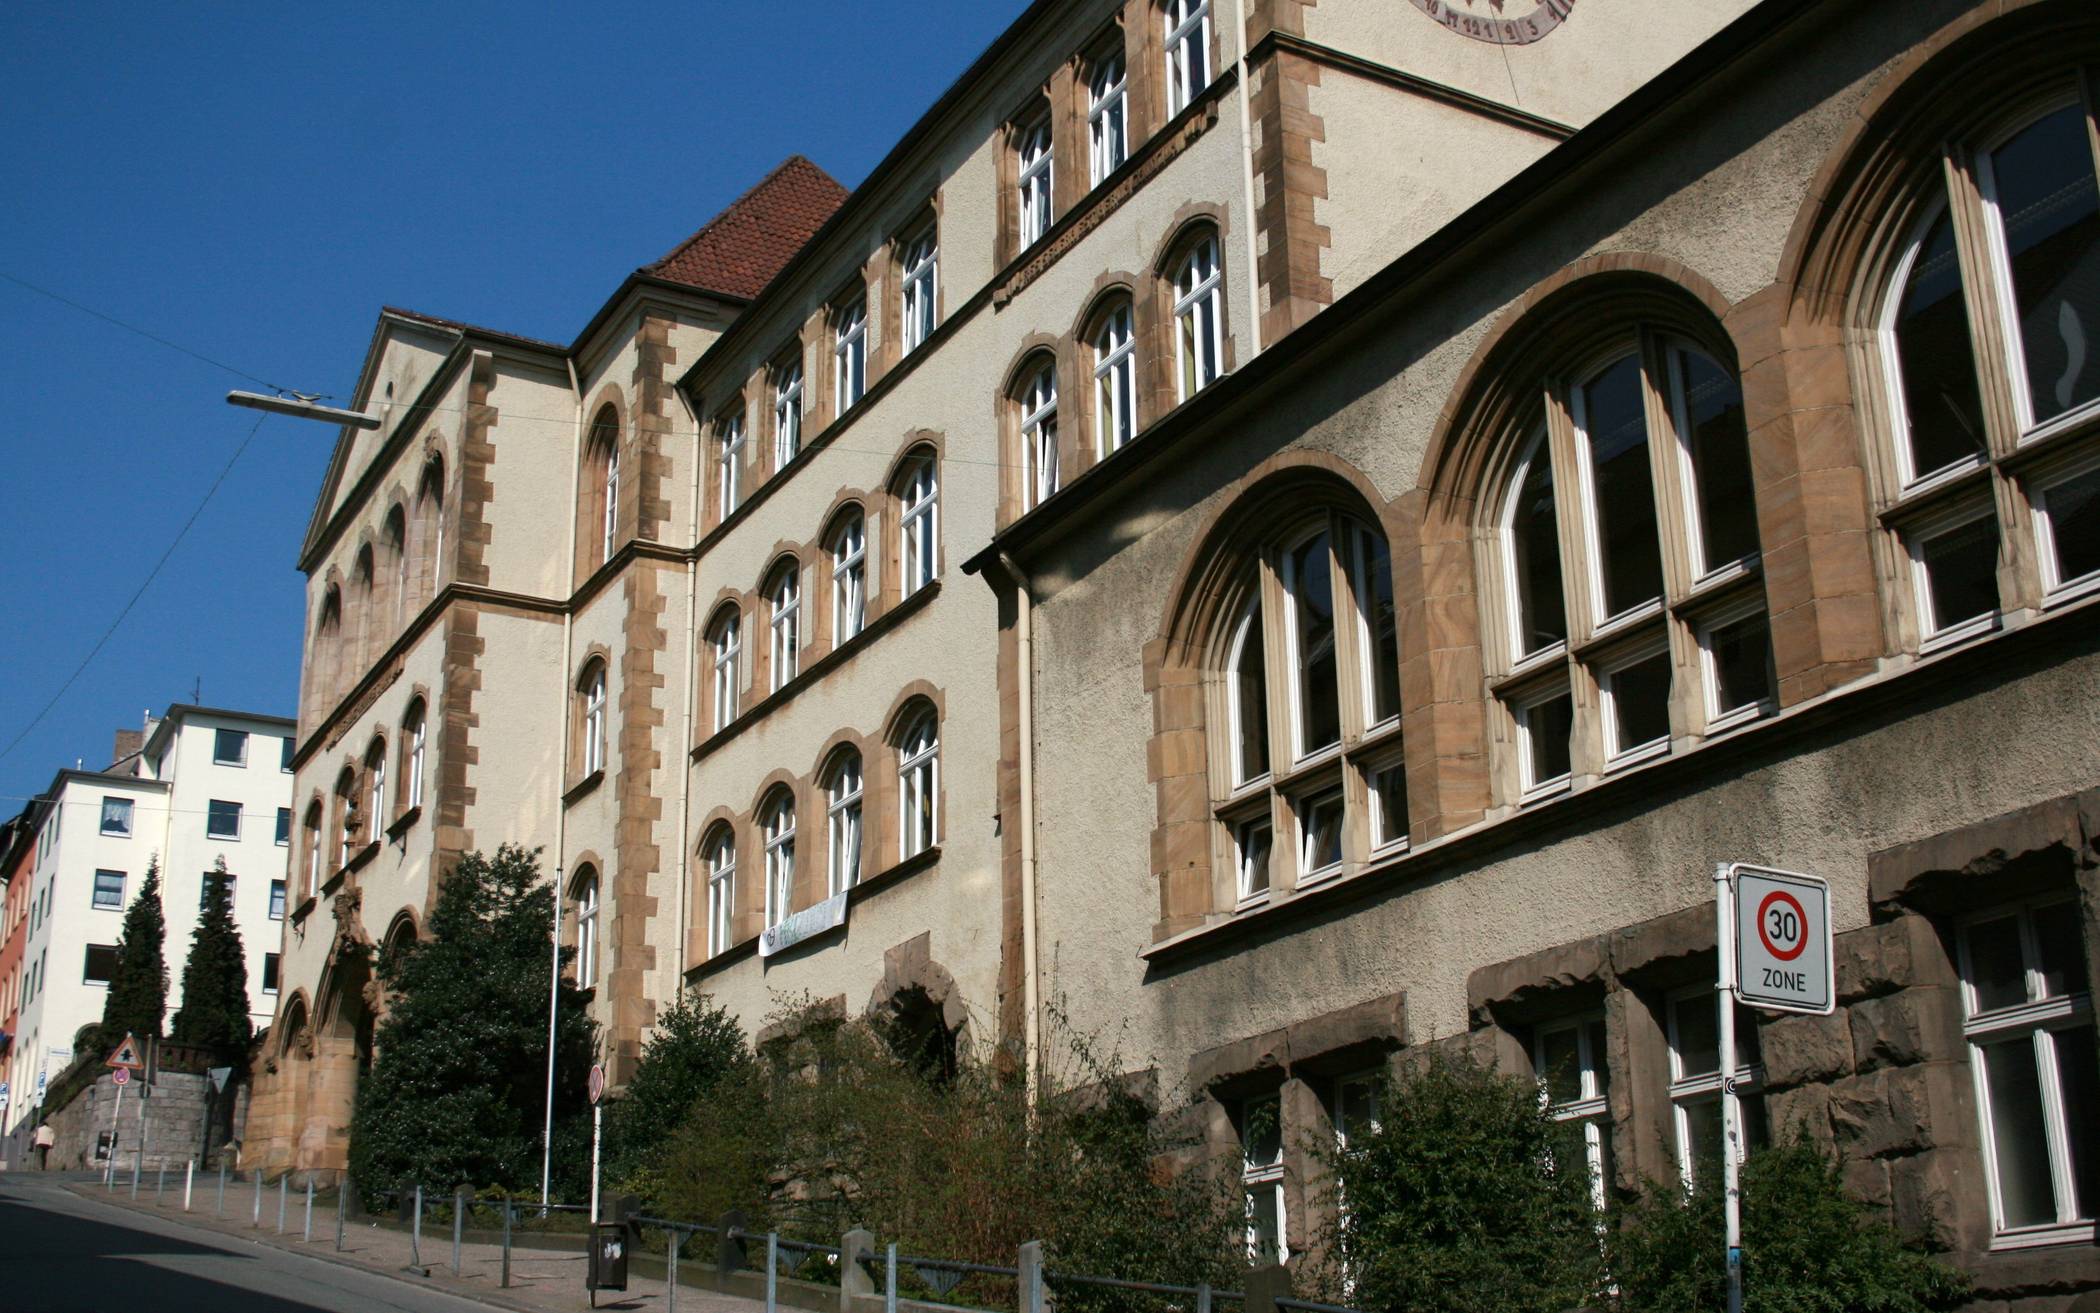  Das Gymnasium an der Sedanstraße in Barmen.  